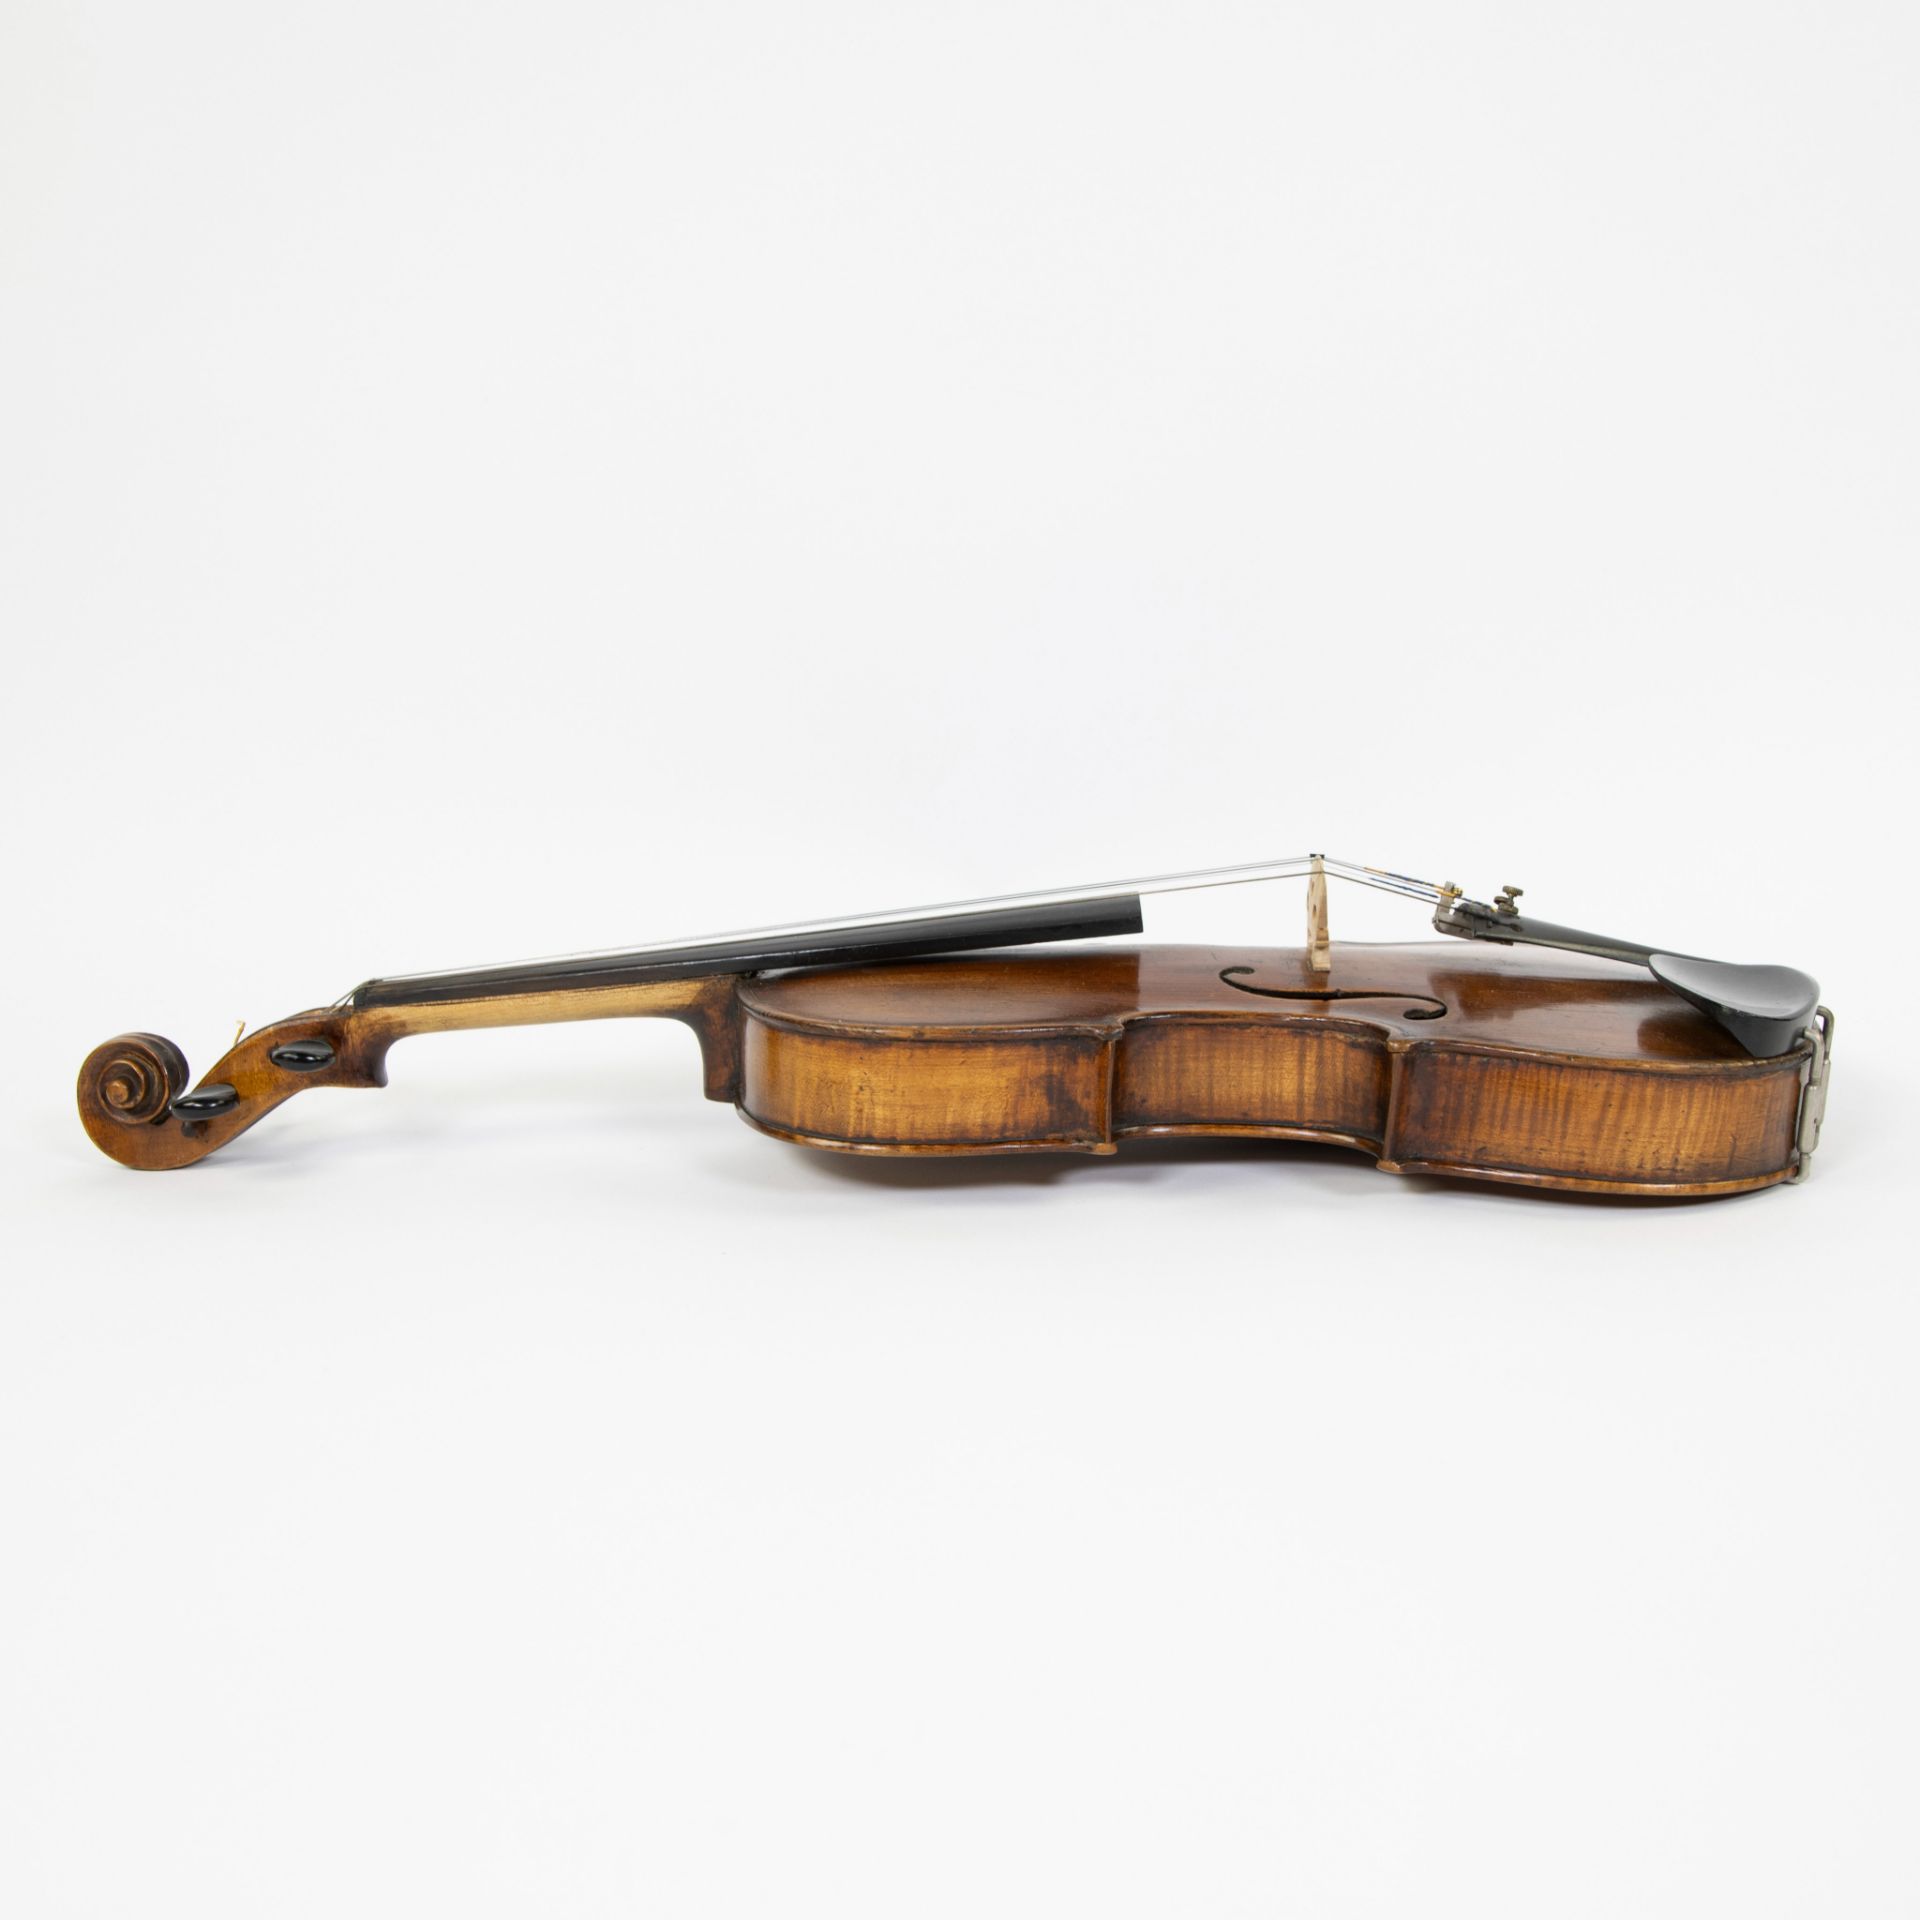 Violin no label, fire stamp heel 'RG', 356mm, wooden case - Image 2 of 5